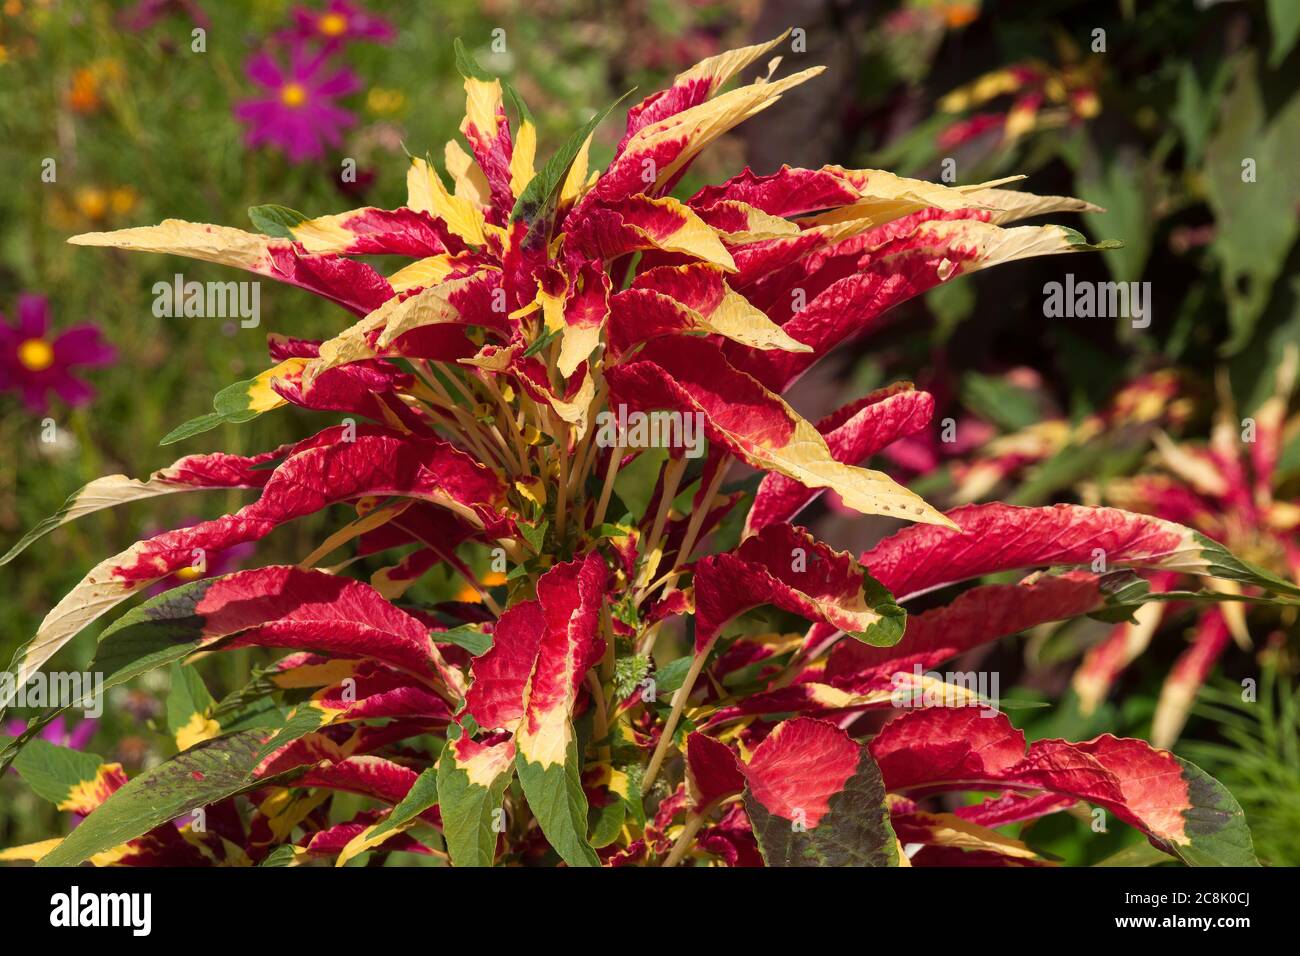 Sydney Australien, bunte Blätter einer dreifarbigen amaranthus-Pflanze Stockfoto